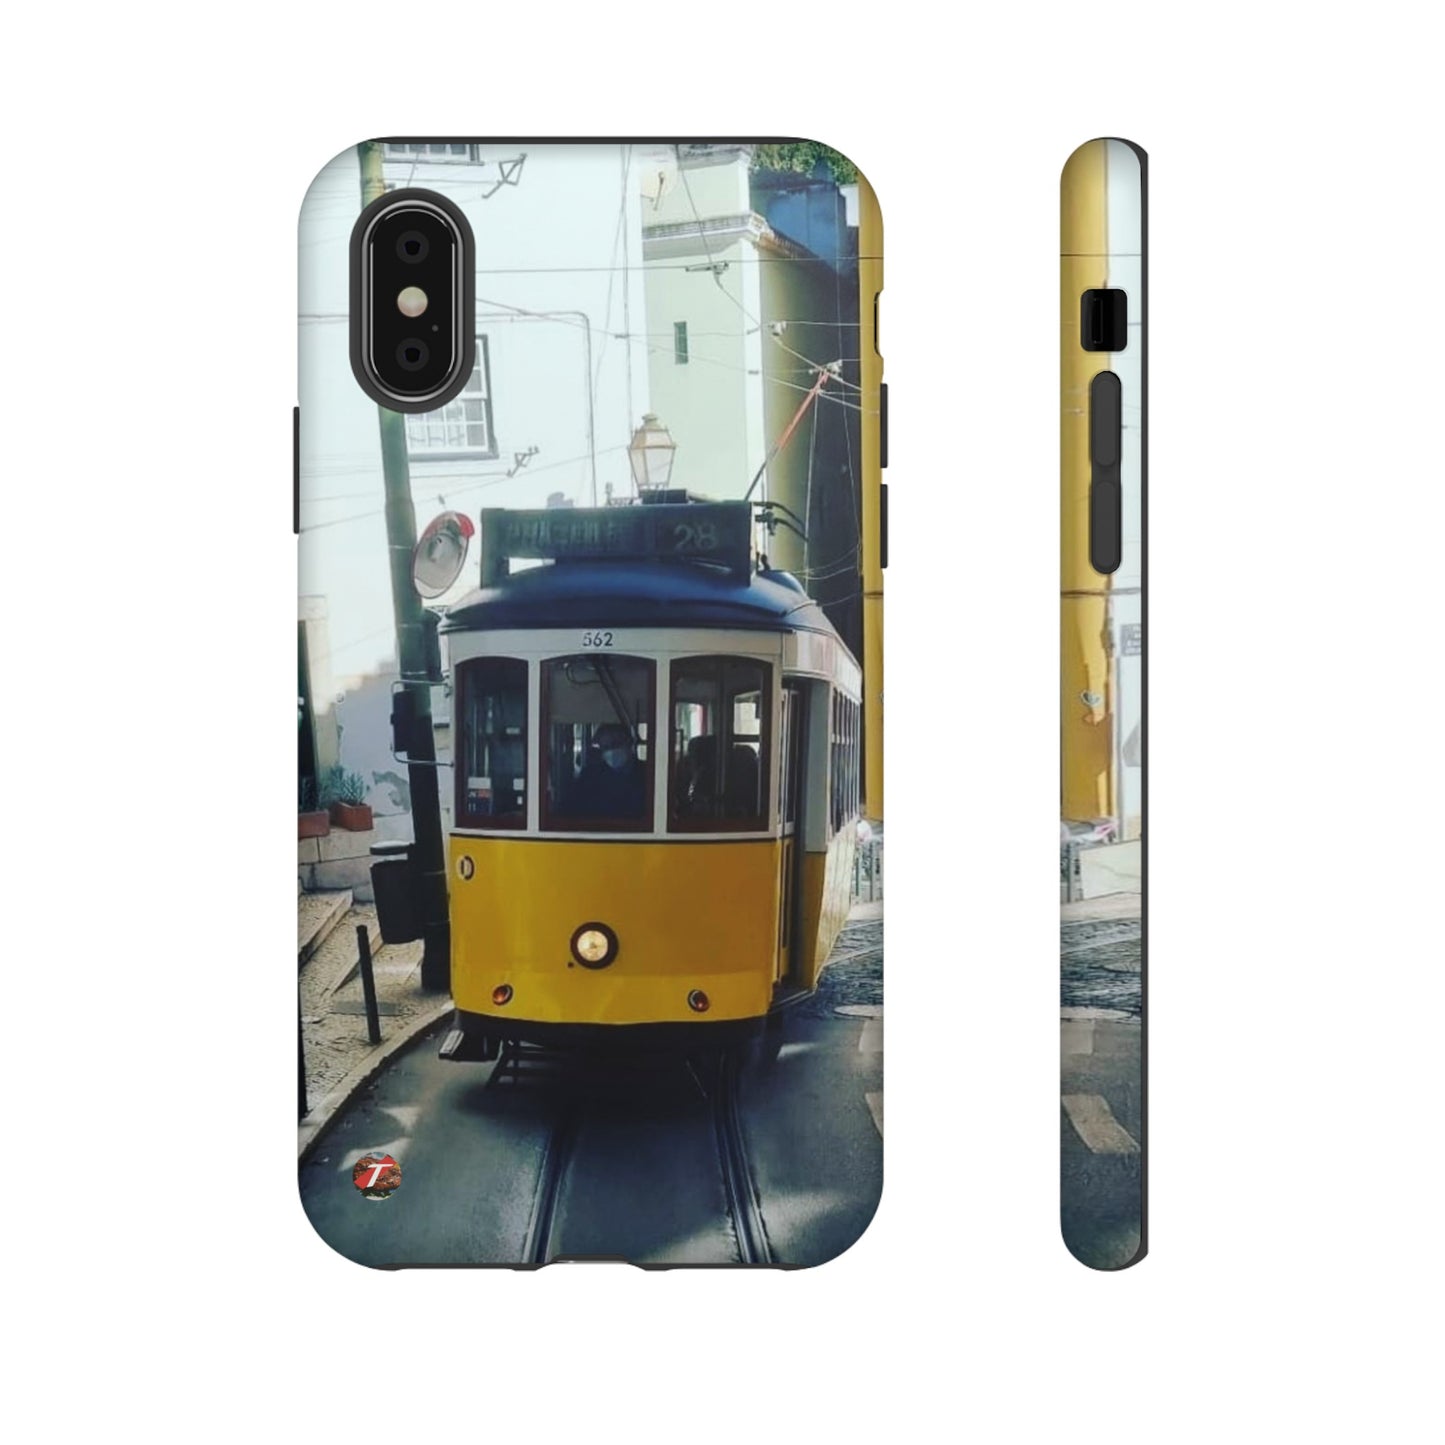 Remodelado Tram | Portugal | Tough Cases